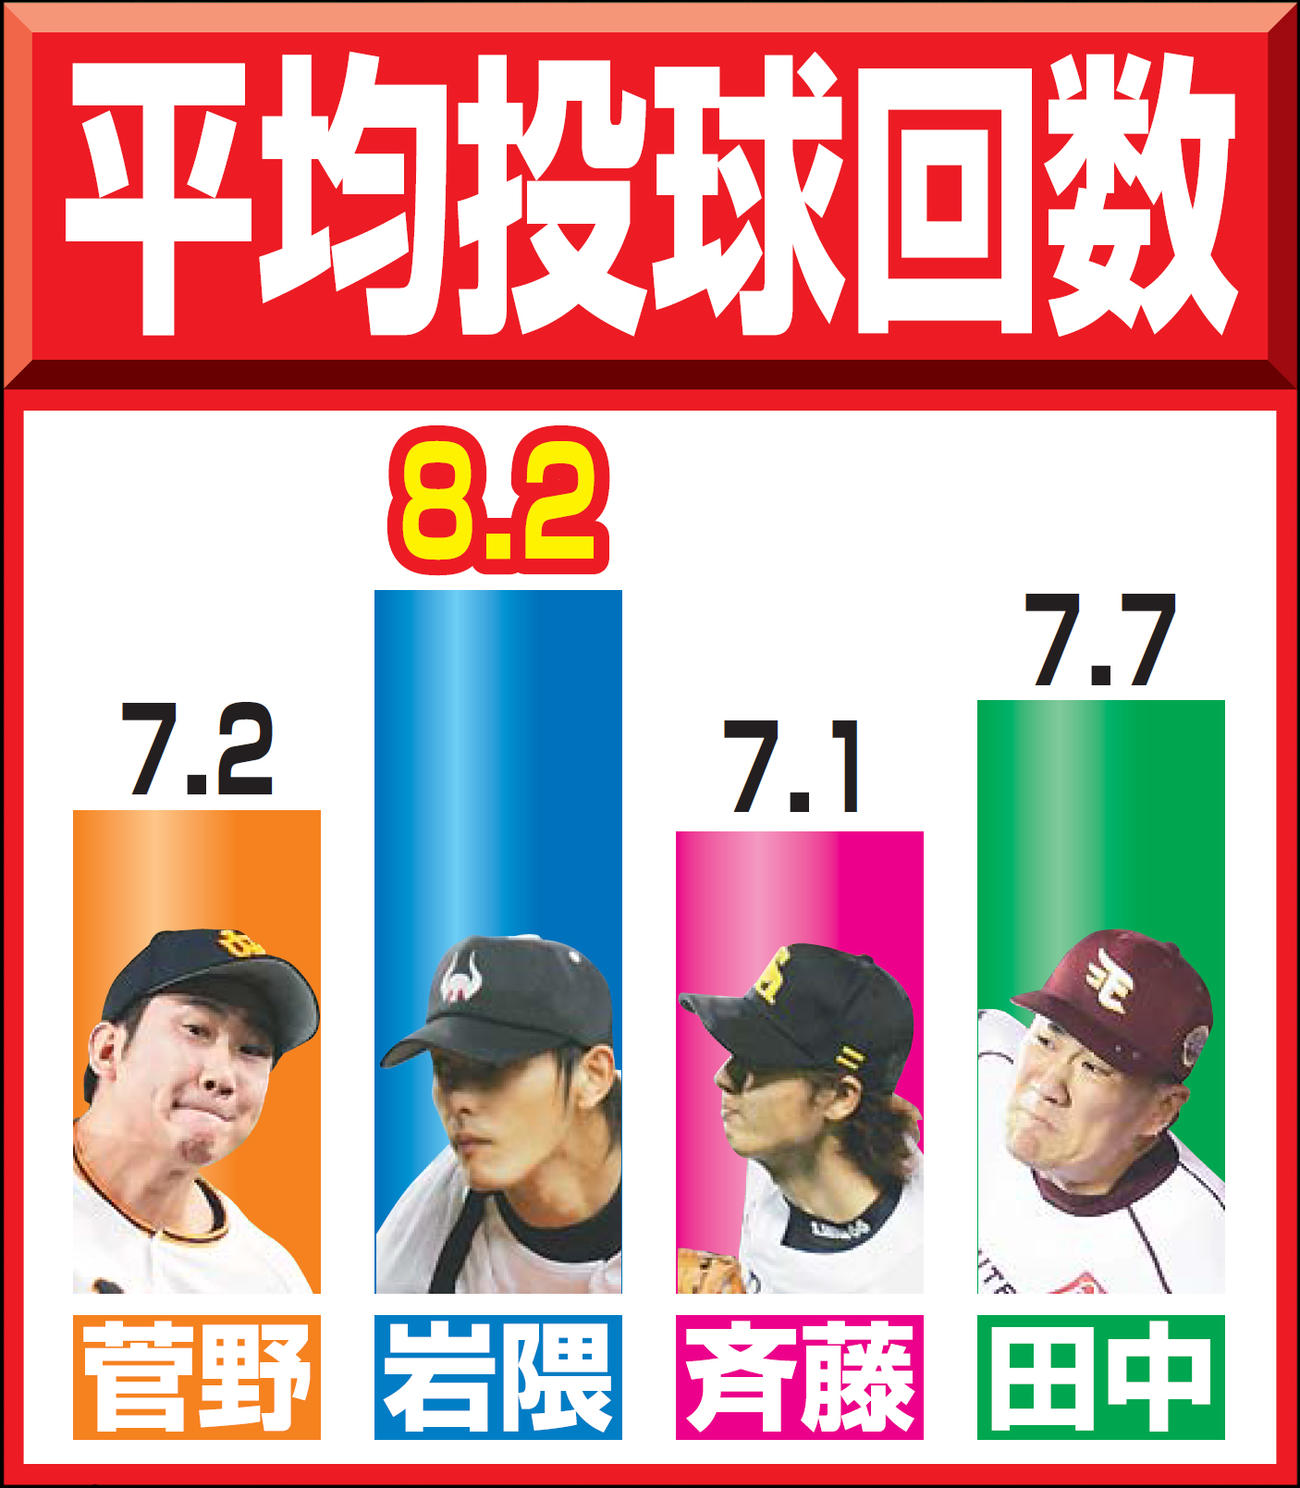 今季の巨人菅野、04年近鉄岩隈、05年ソフトバンク斉藤、13年楽天田中の平均投球回数の比較